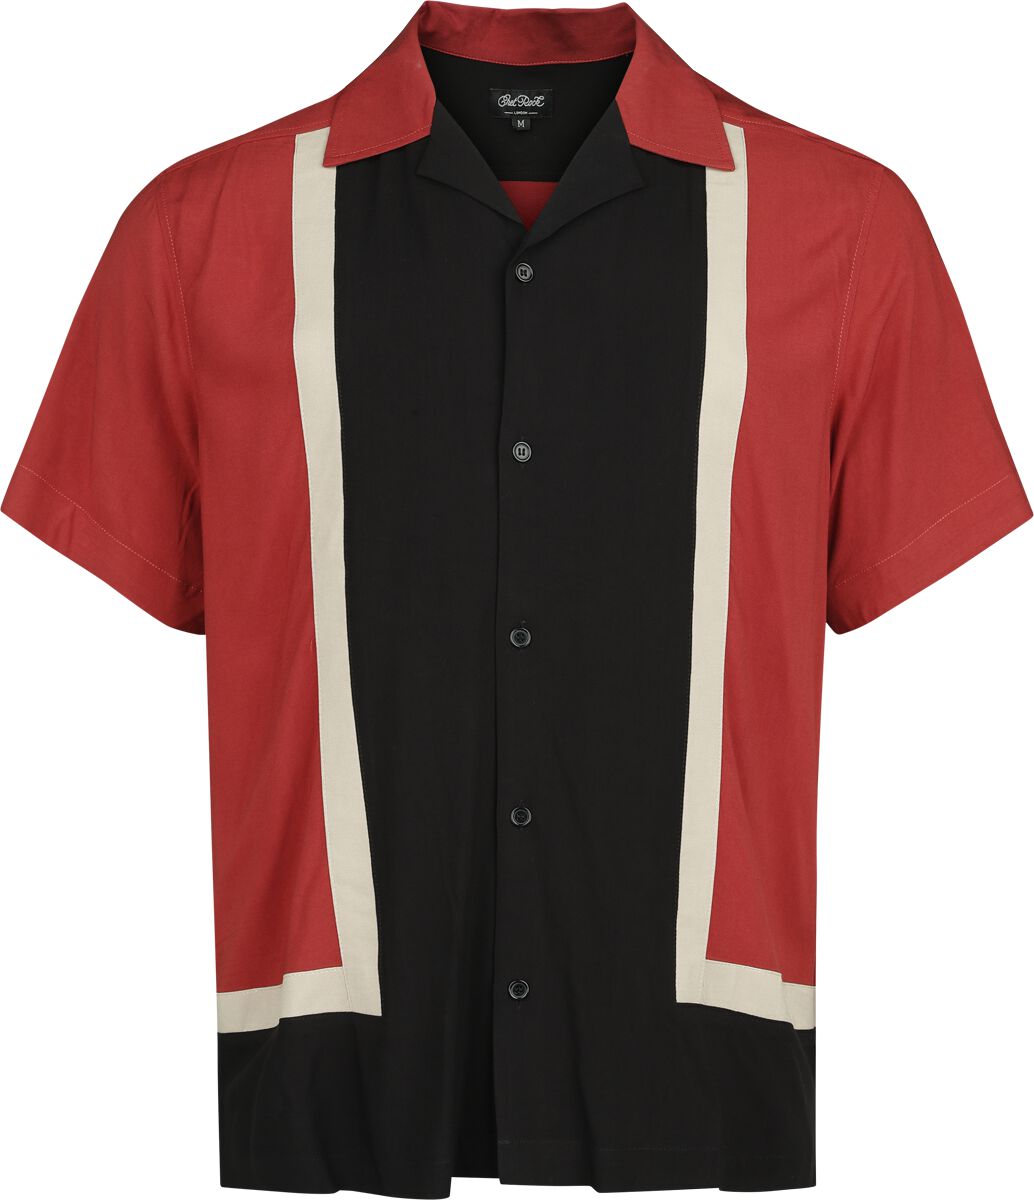 Chet Rock Walter Bowling Shirt Kurzarmhemd rot schwarz in M